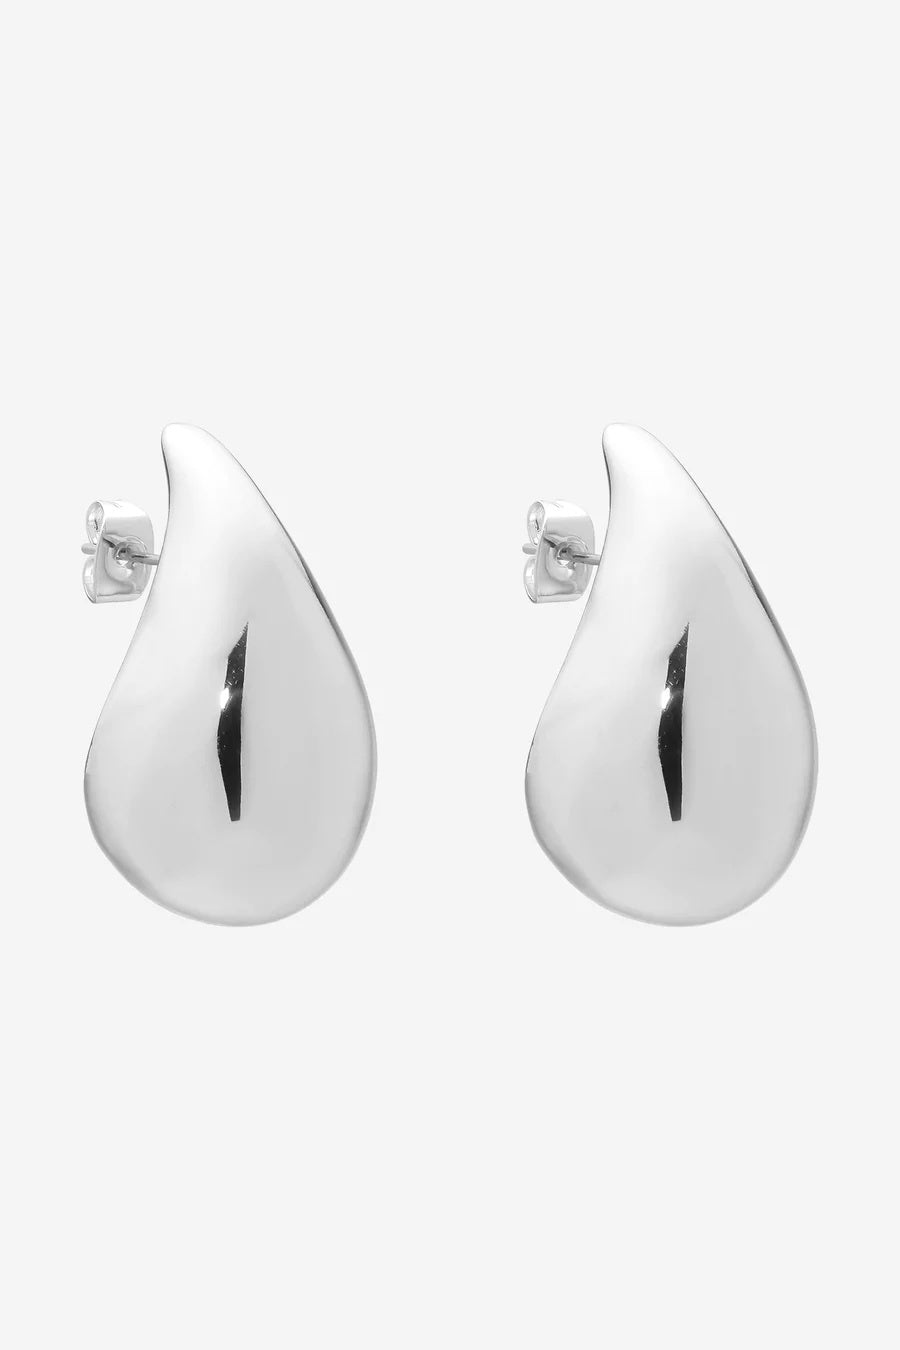 Lumen earrings Silver